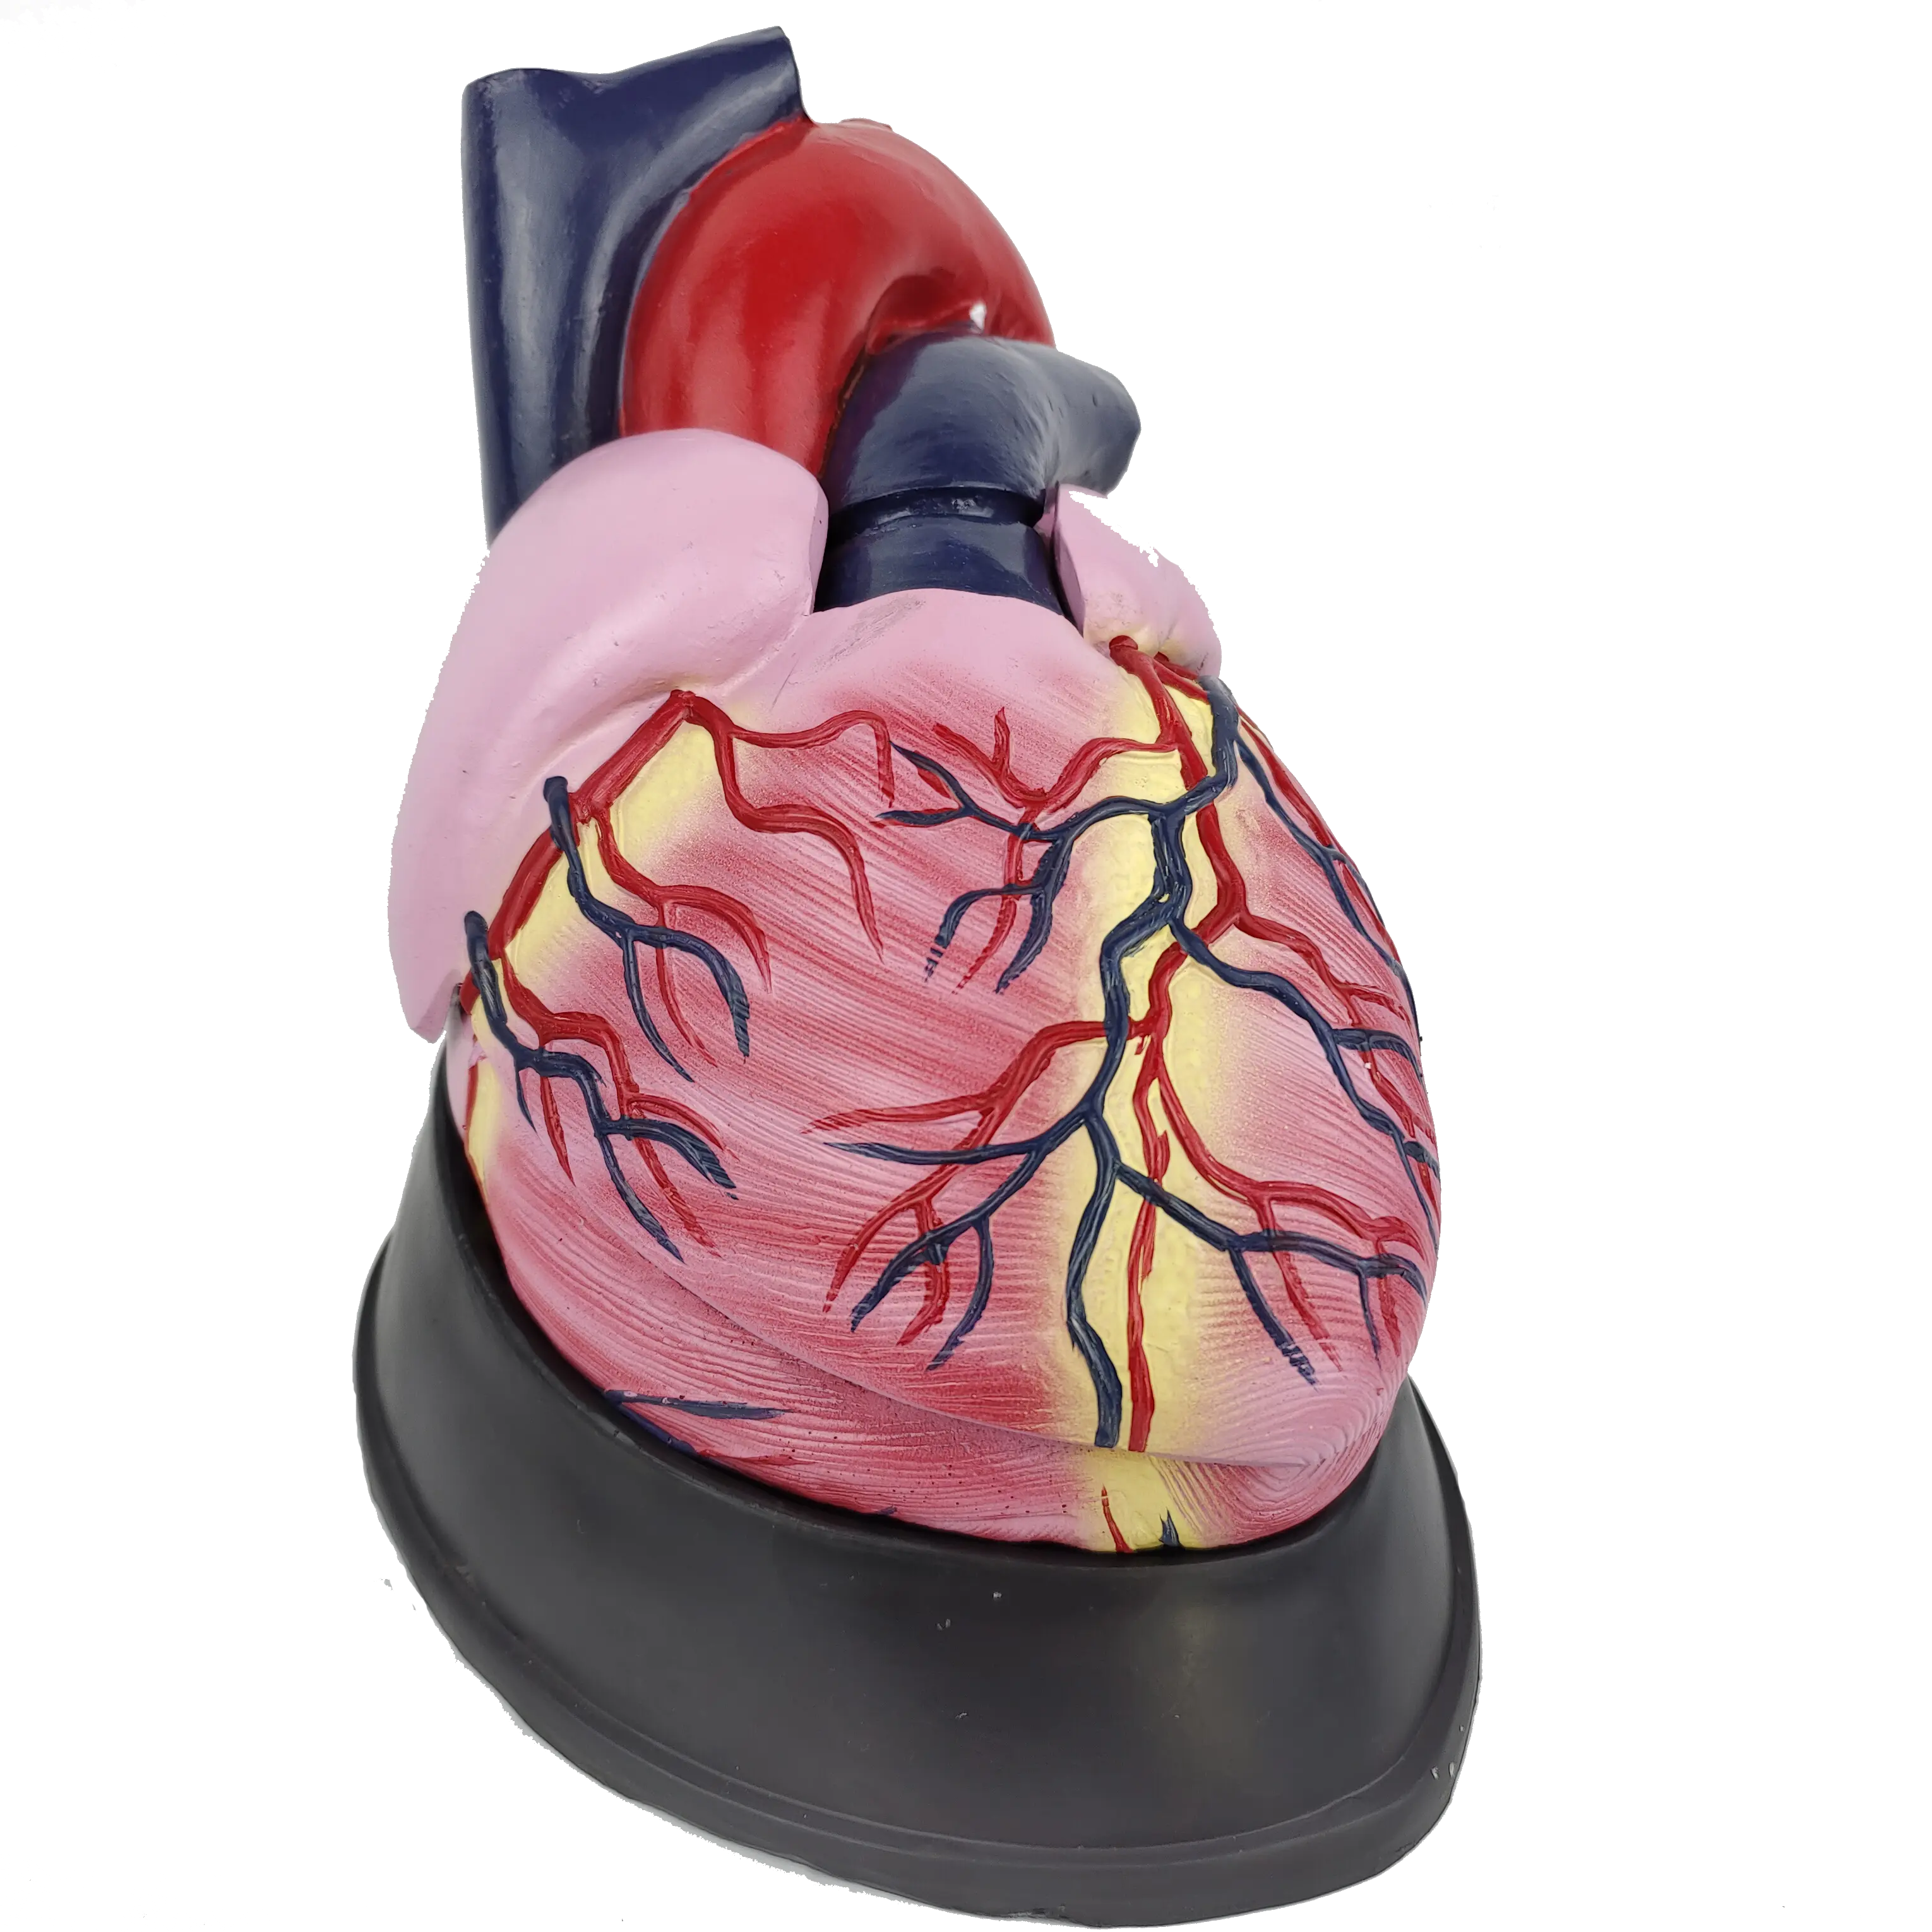 แบบจำลองทางกายวิภาคที่ขยายใหญ่ขึ้นของหัวใจมนุษย์, การสาธิตกายวิภาคของอวัยวะในอวัยวะภายใน, แบบจำลองหัวใจขยาย, แบบจำลองทางการแพทย์